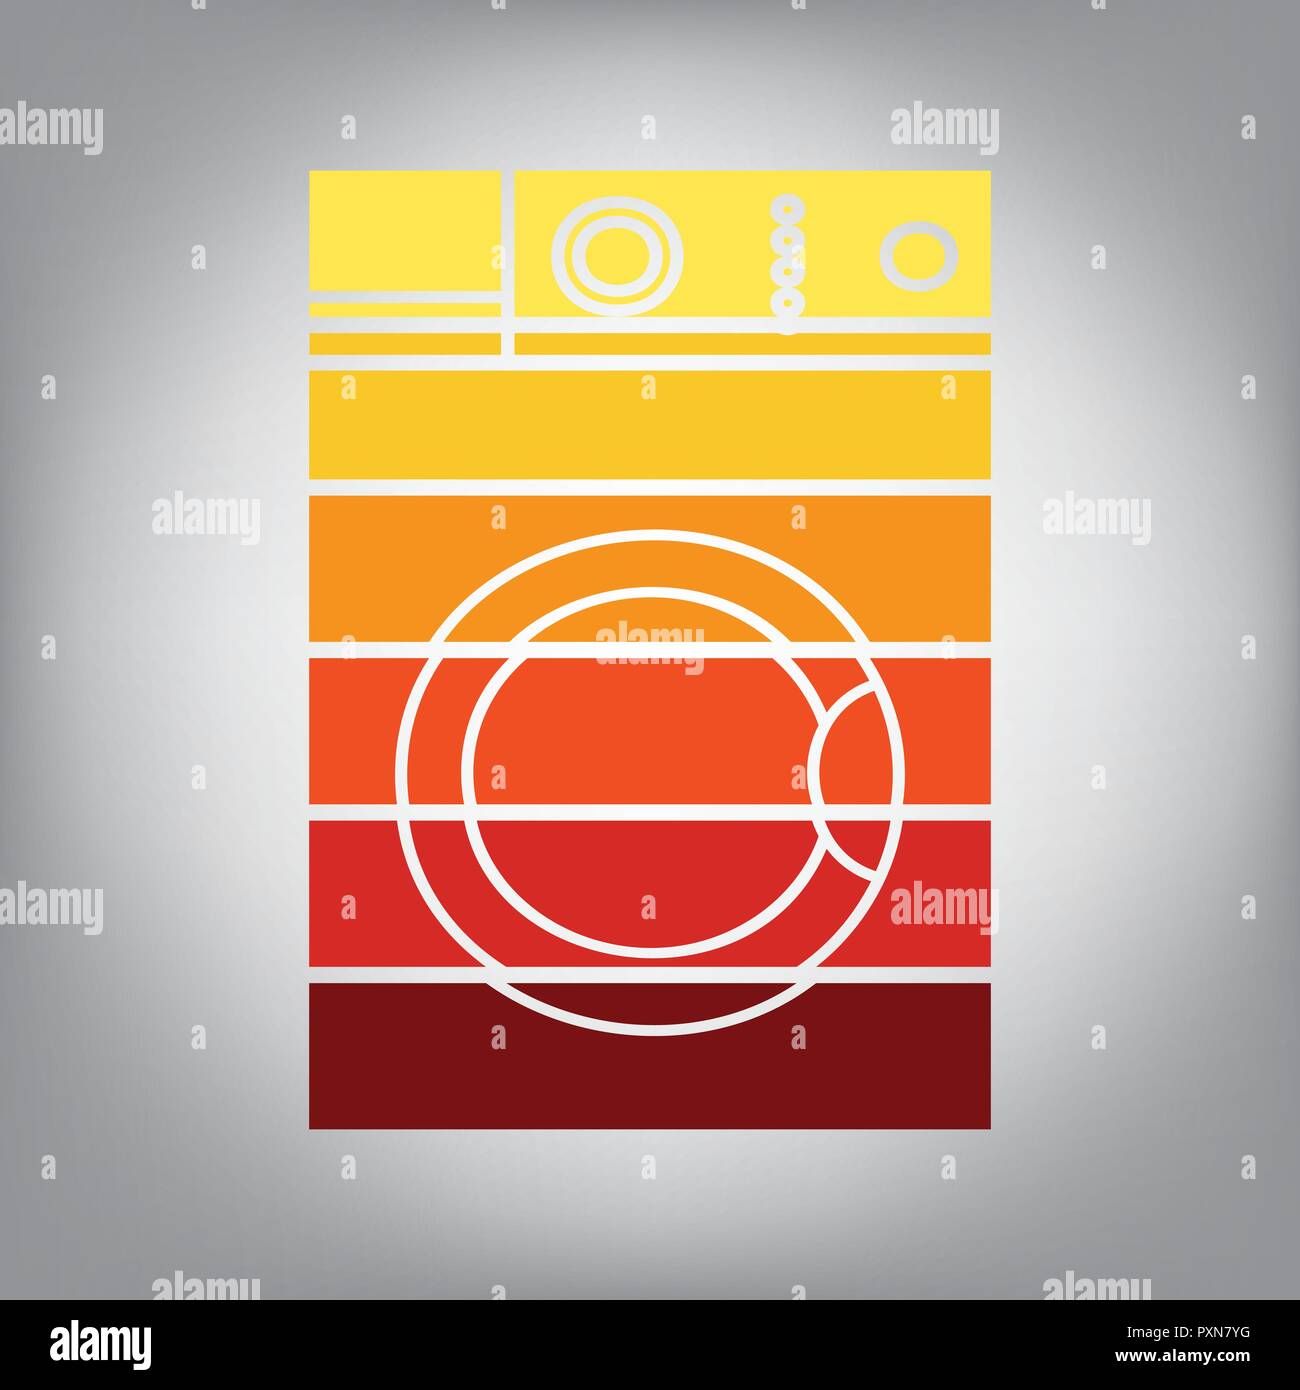 Waschmaschine unterzeichnen. Vektor. Horizontal geschnitten Symbol mit Farben aus dem sonnigen Gradient in grauen Hintergrund. Stock Vektor